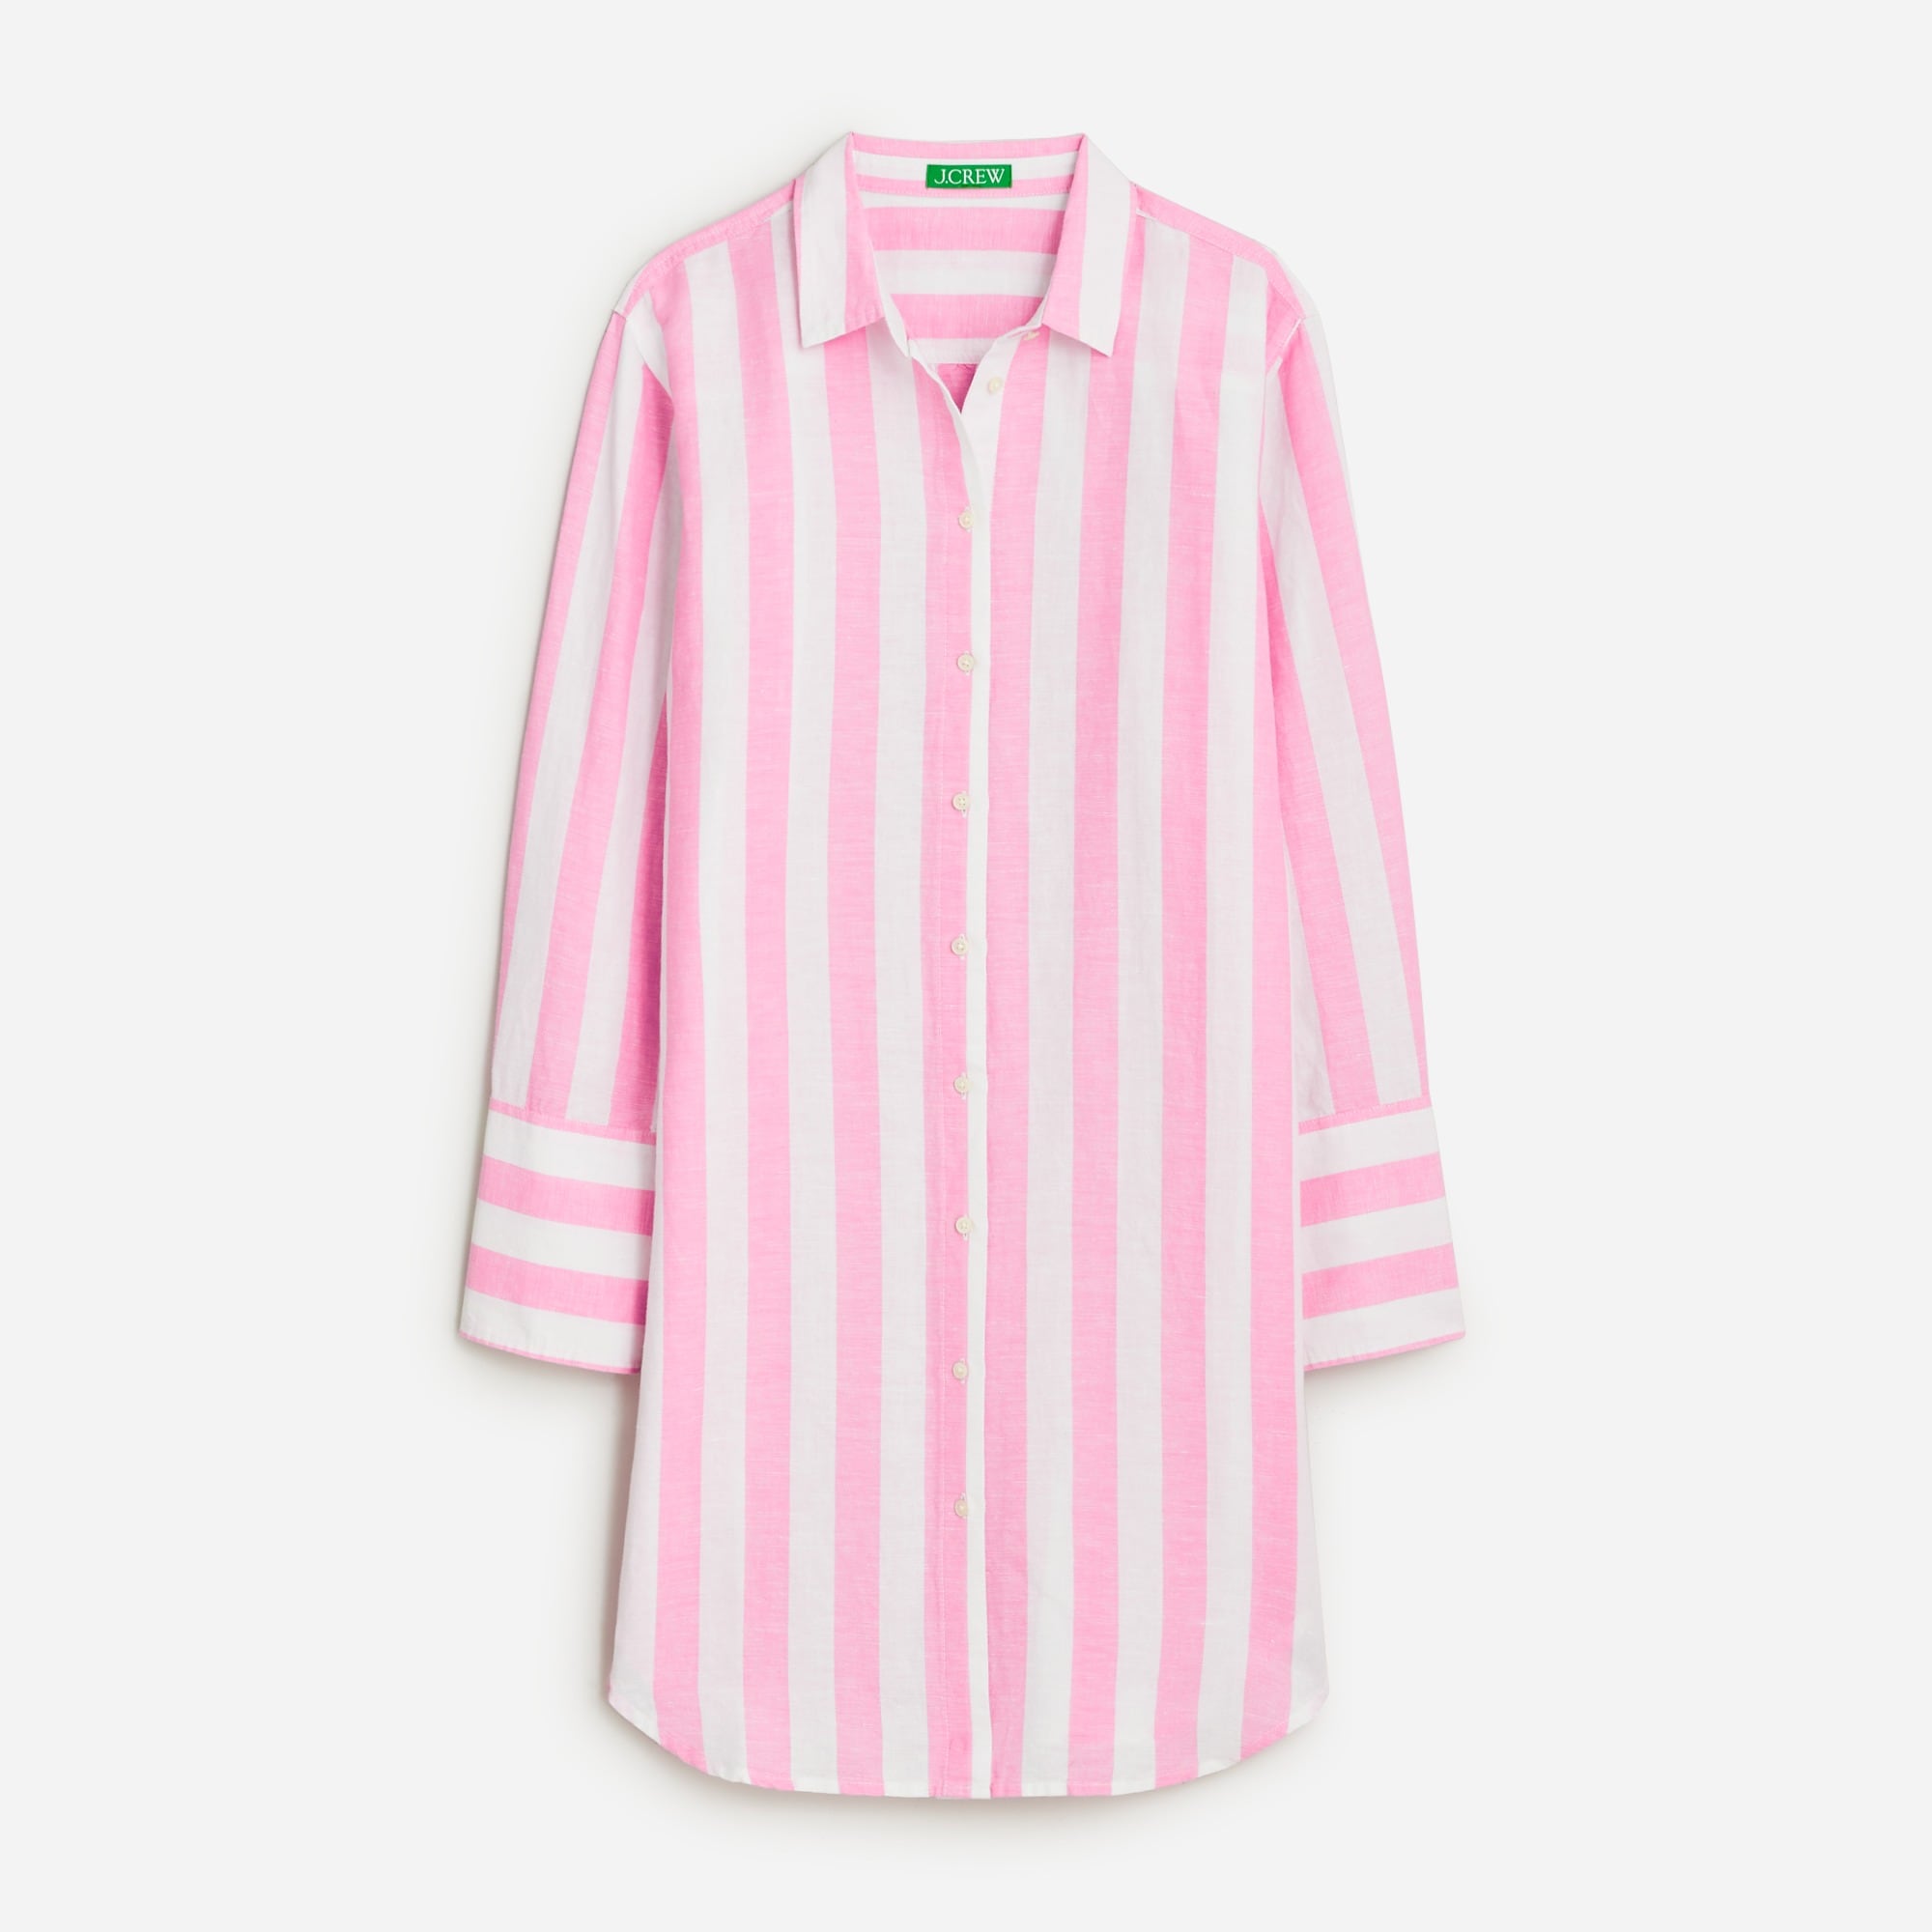  Linen-cotton blend beach shirt in stripe